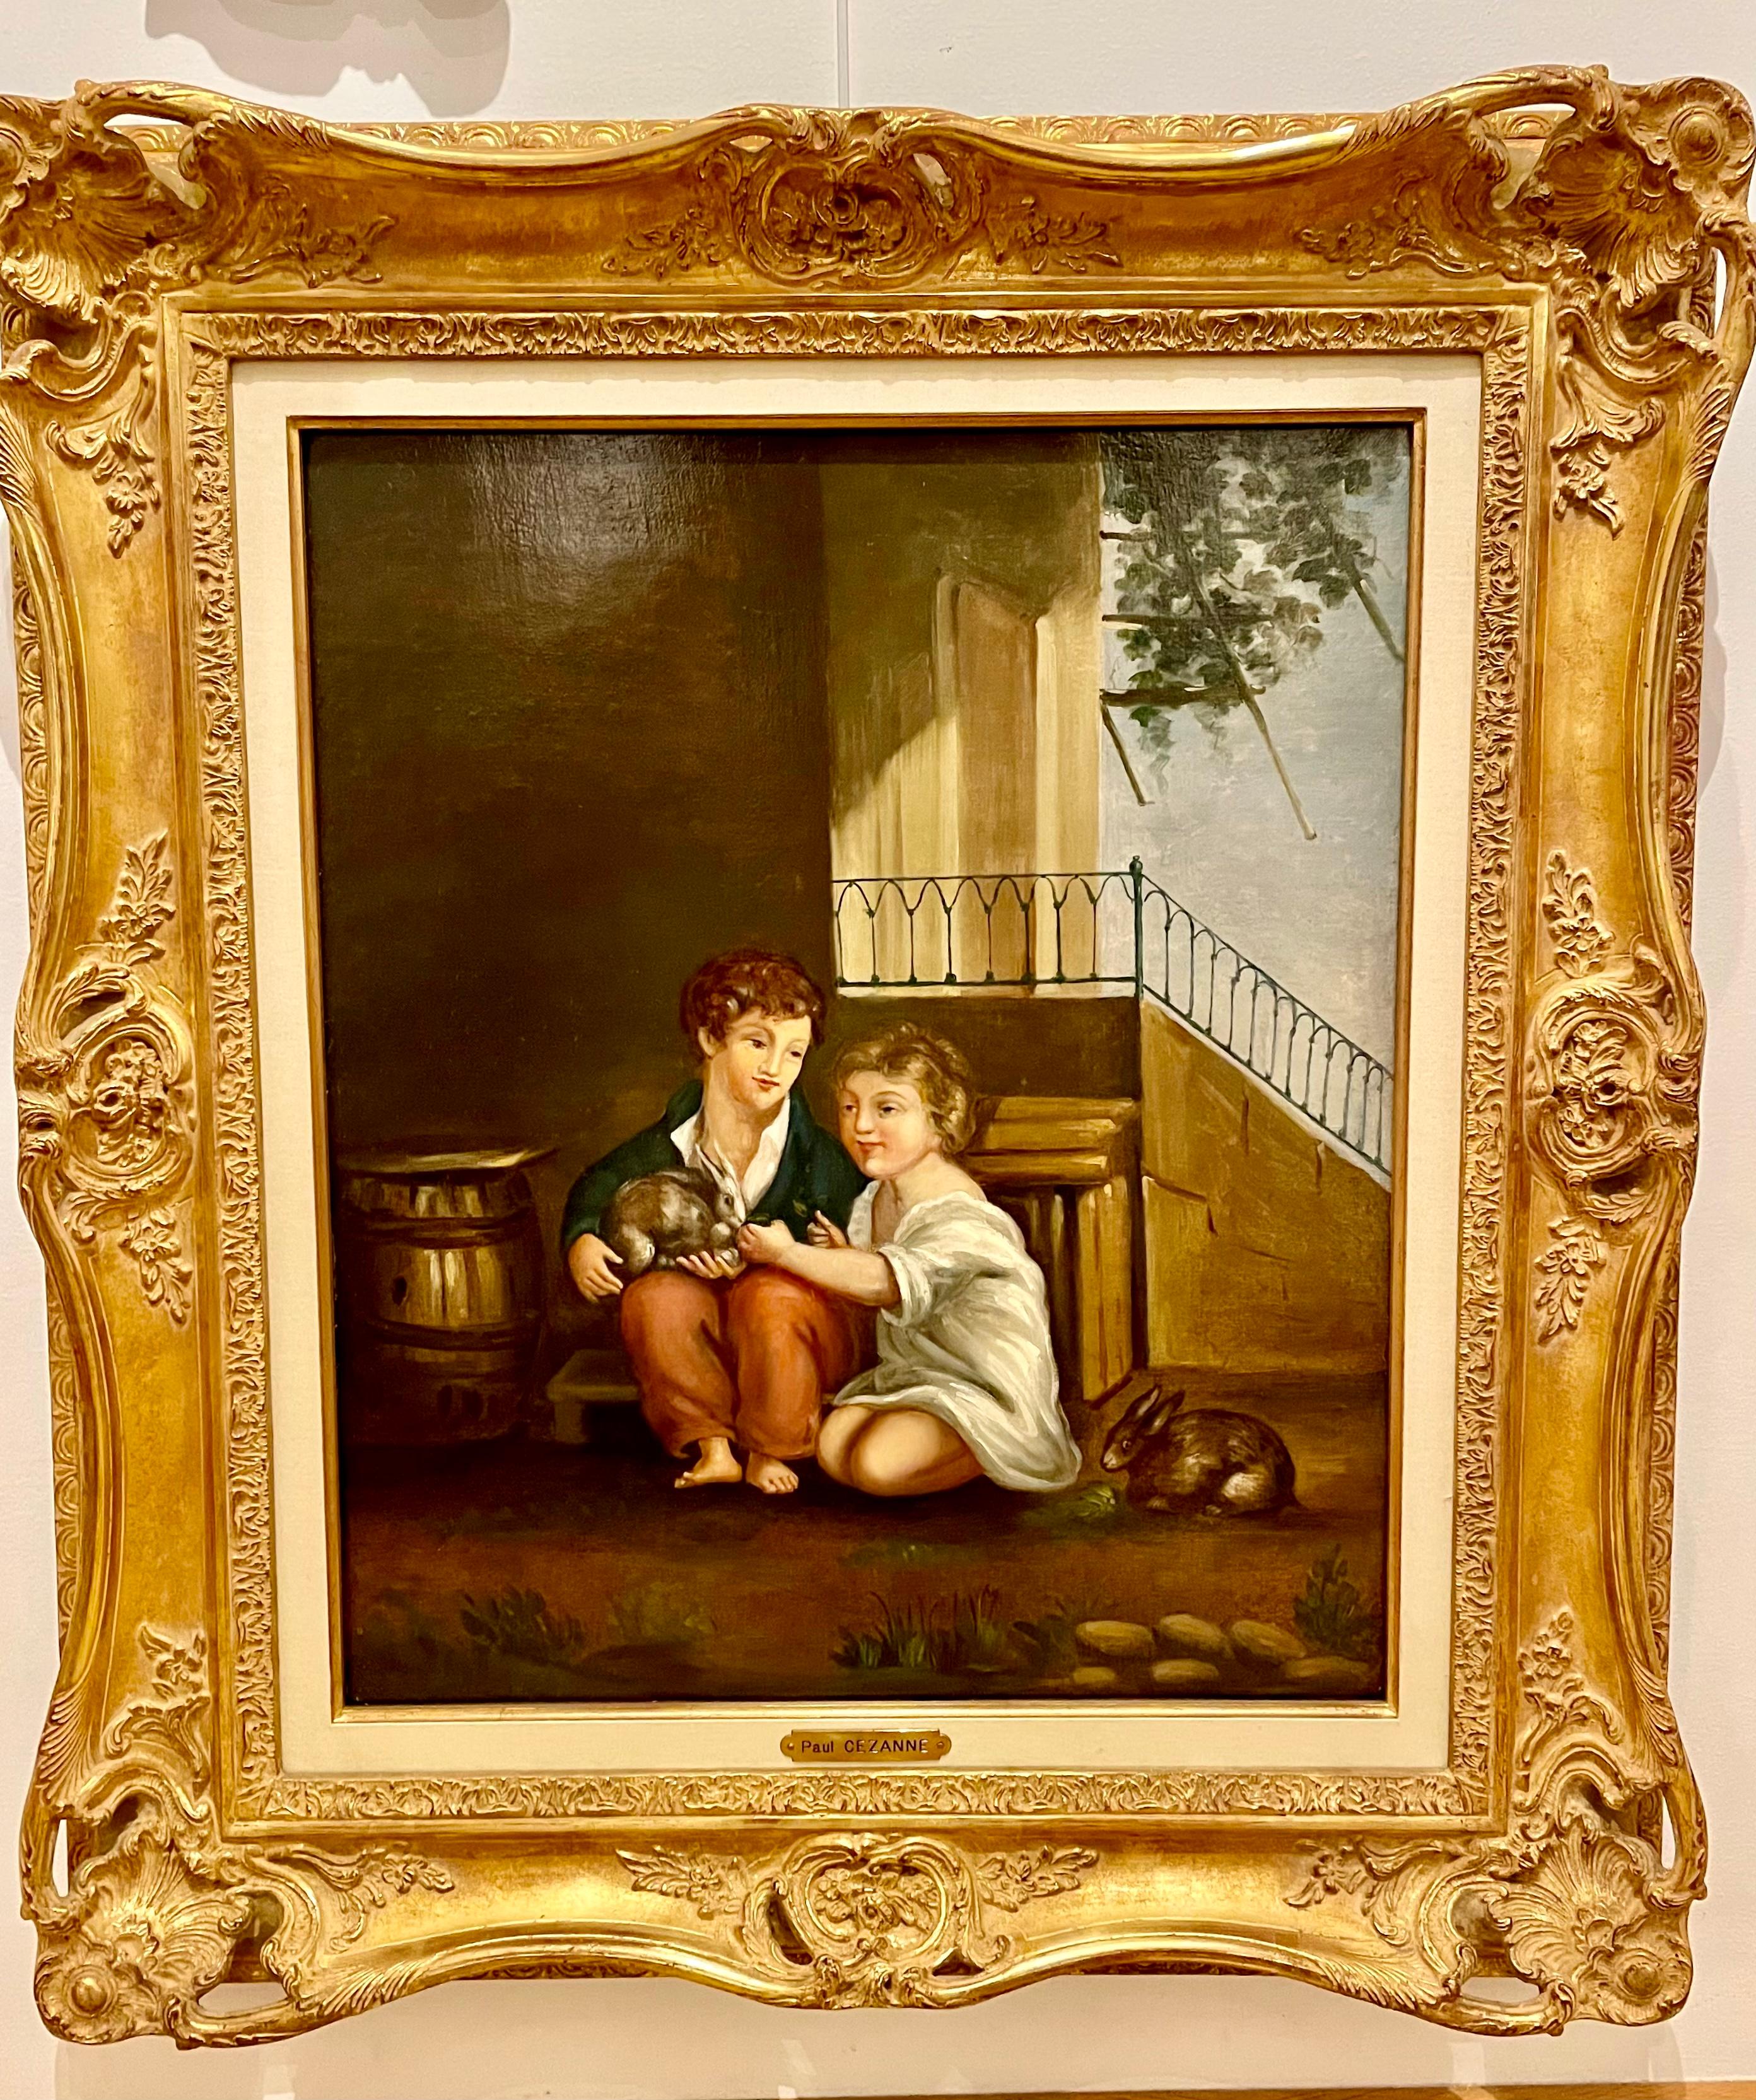 Les deux Enfants - Painting by Paul Cézanne